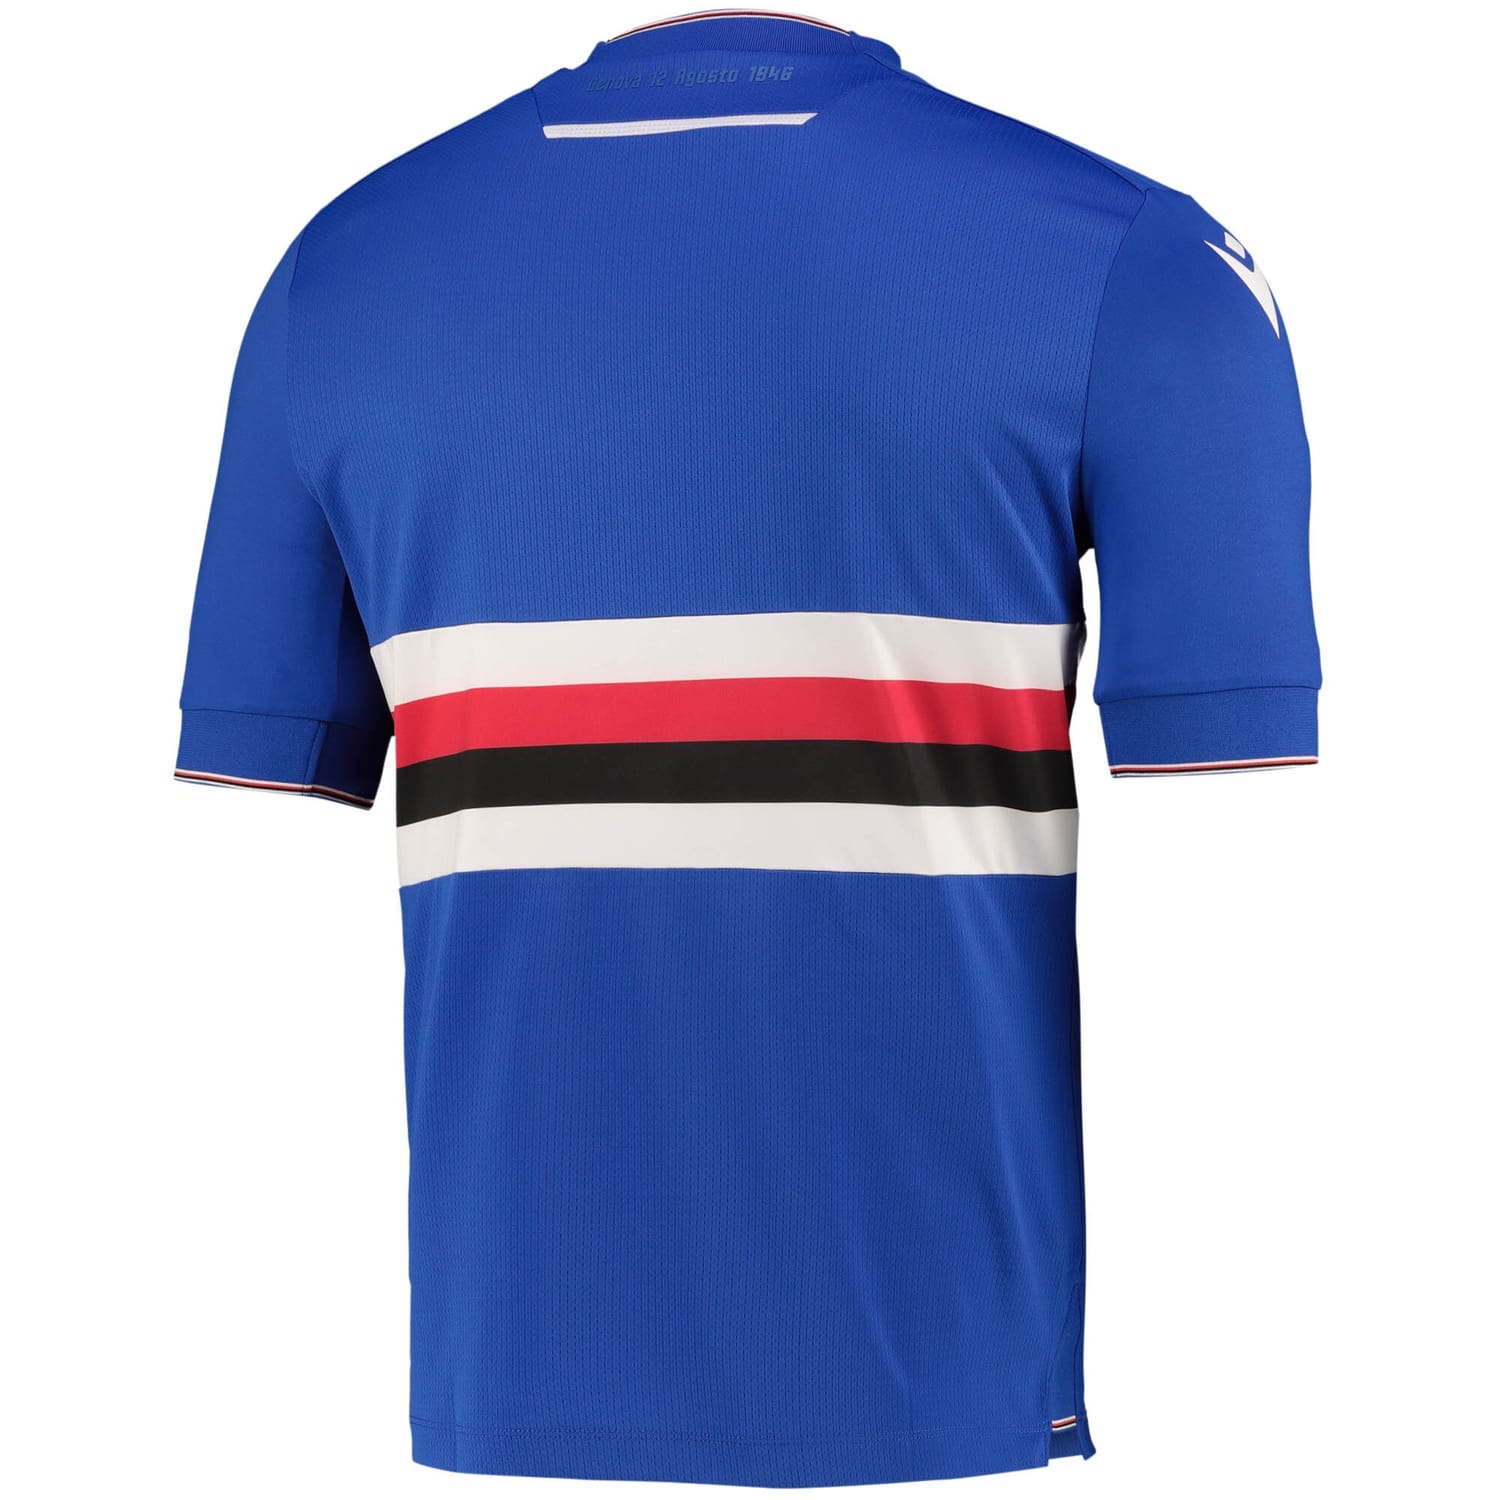 Serie A U.C. Sampdoria Home Jersey Shirt 2022-23 for Men